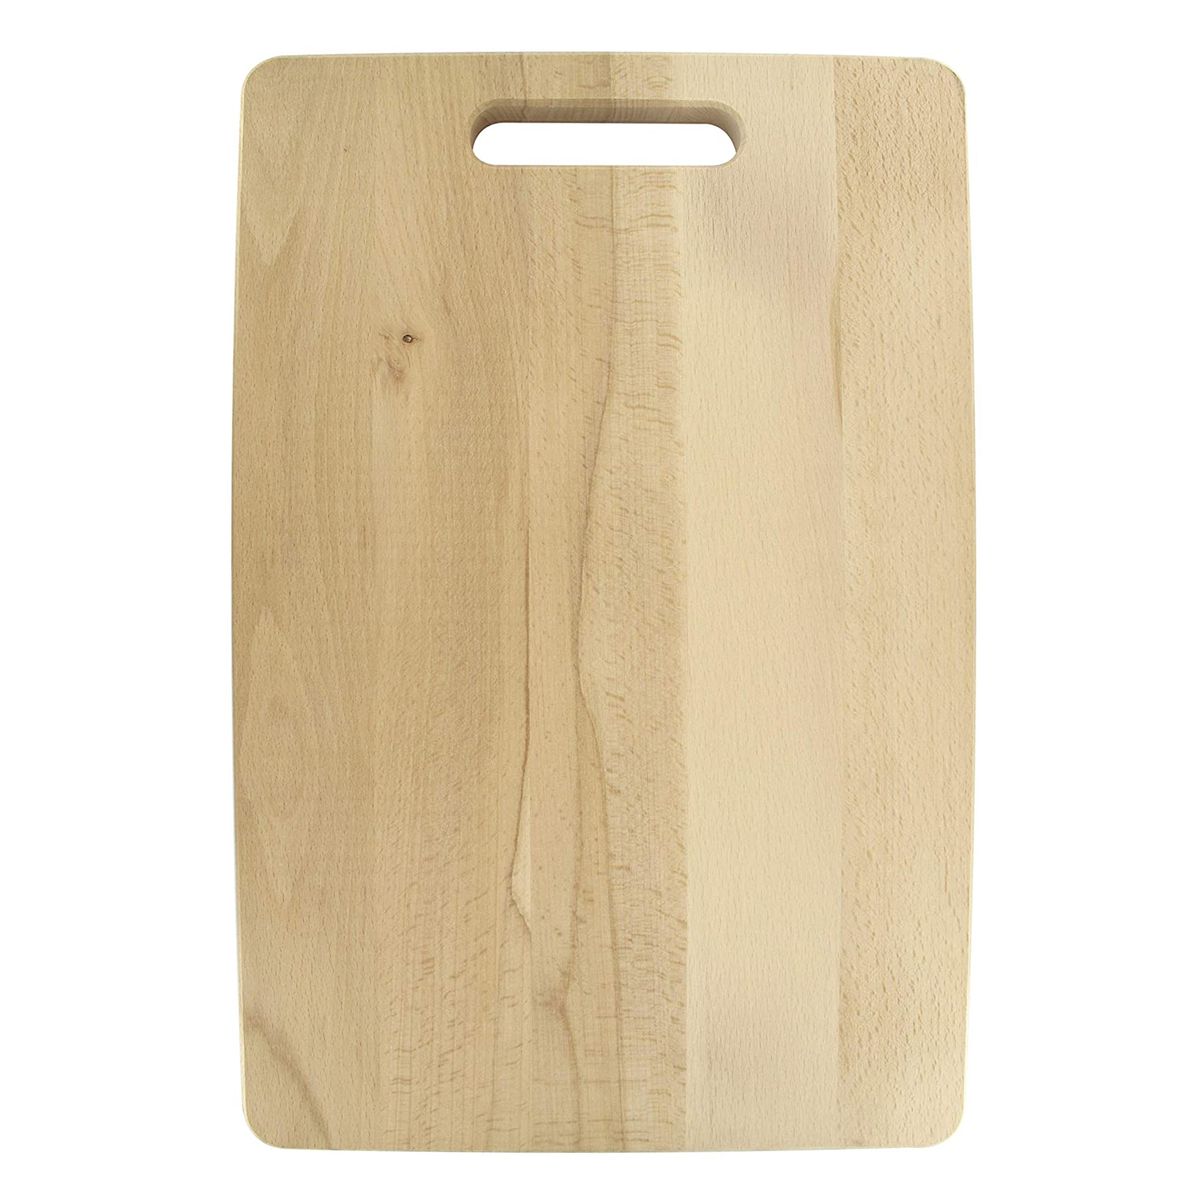 Planche à découper rectangulaire en bois Fackelmann Wood Edition 44 x 30 cm